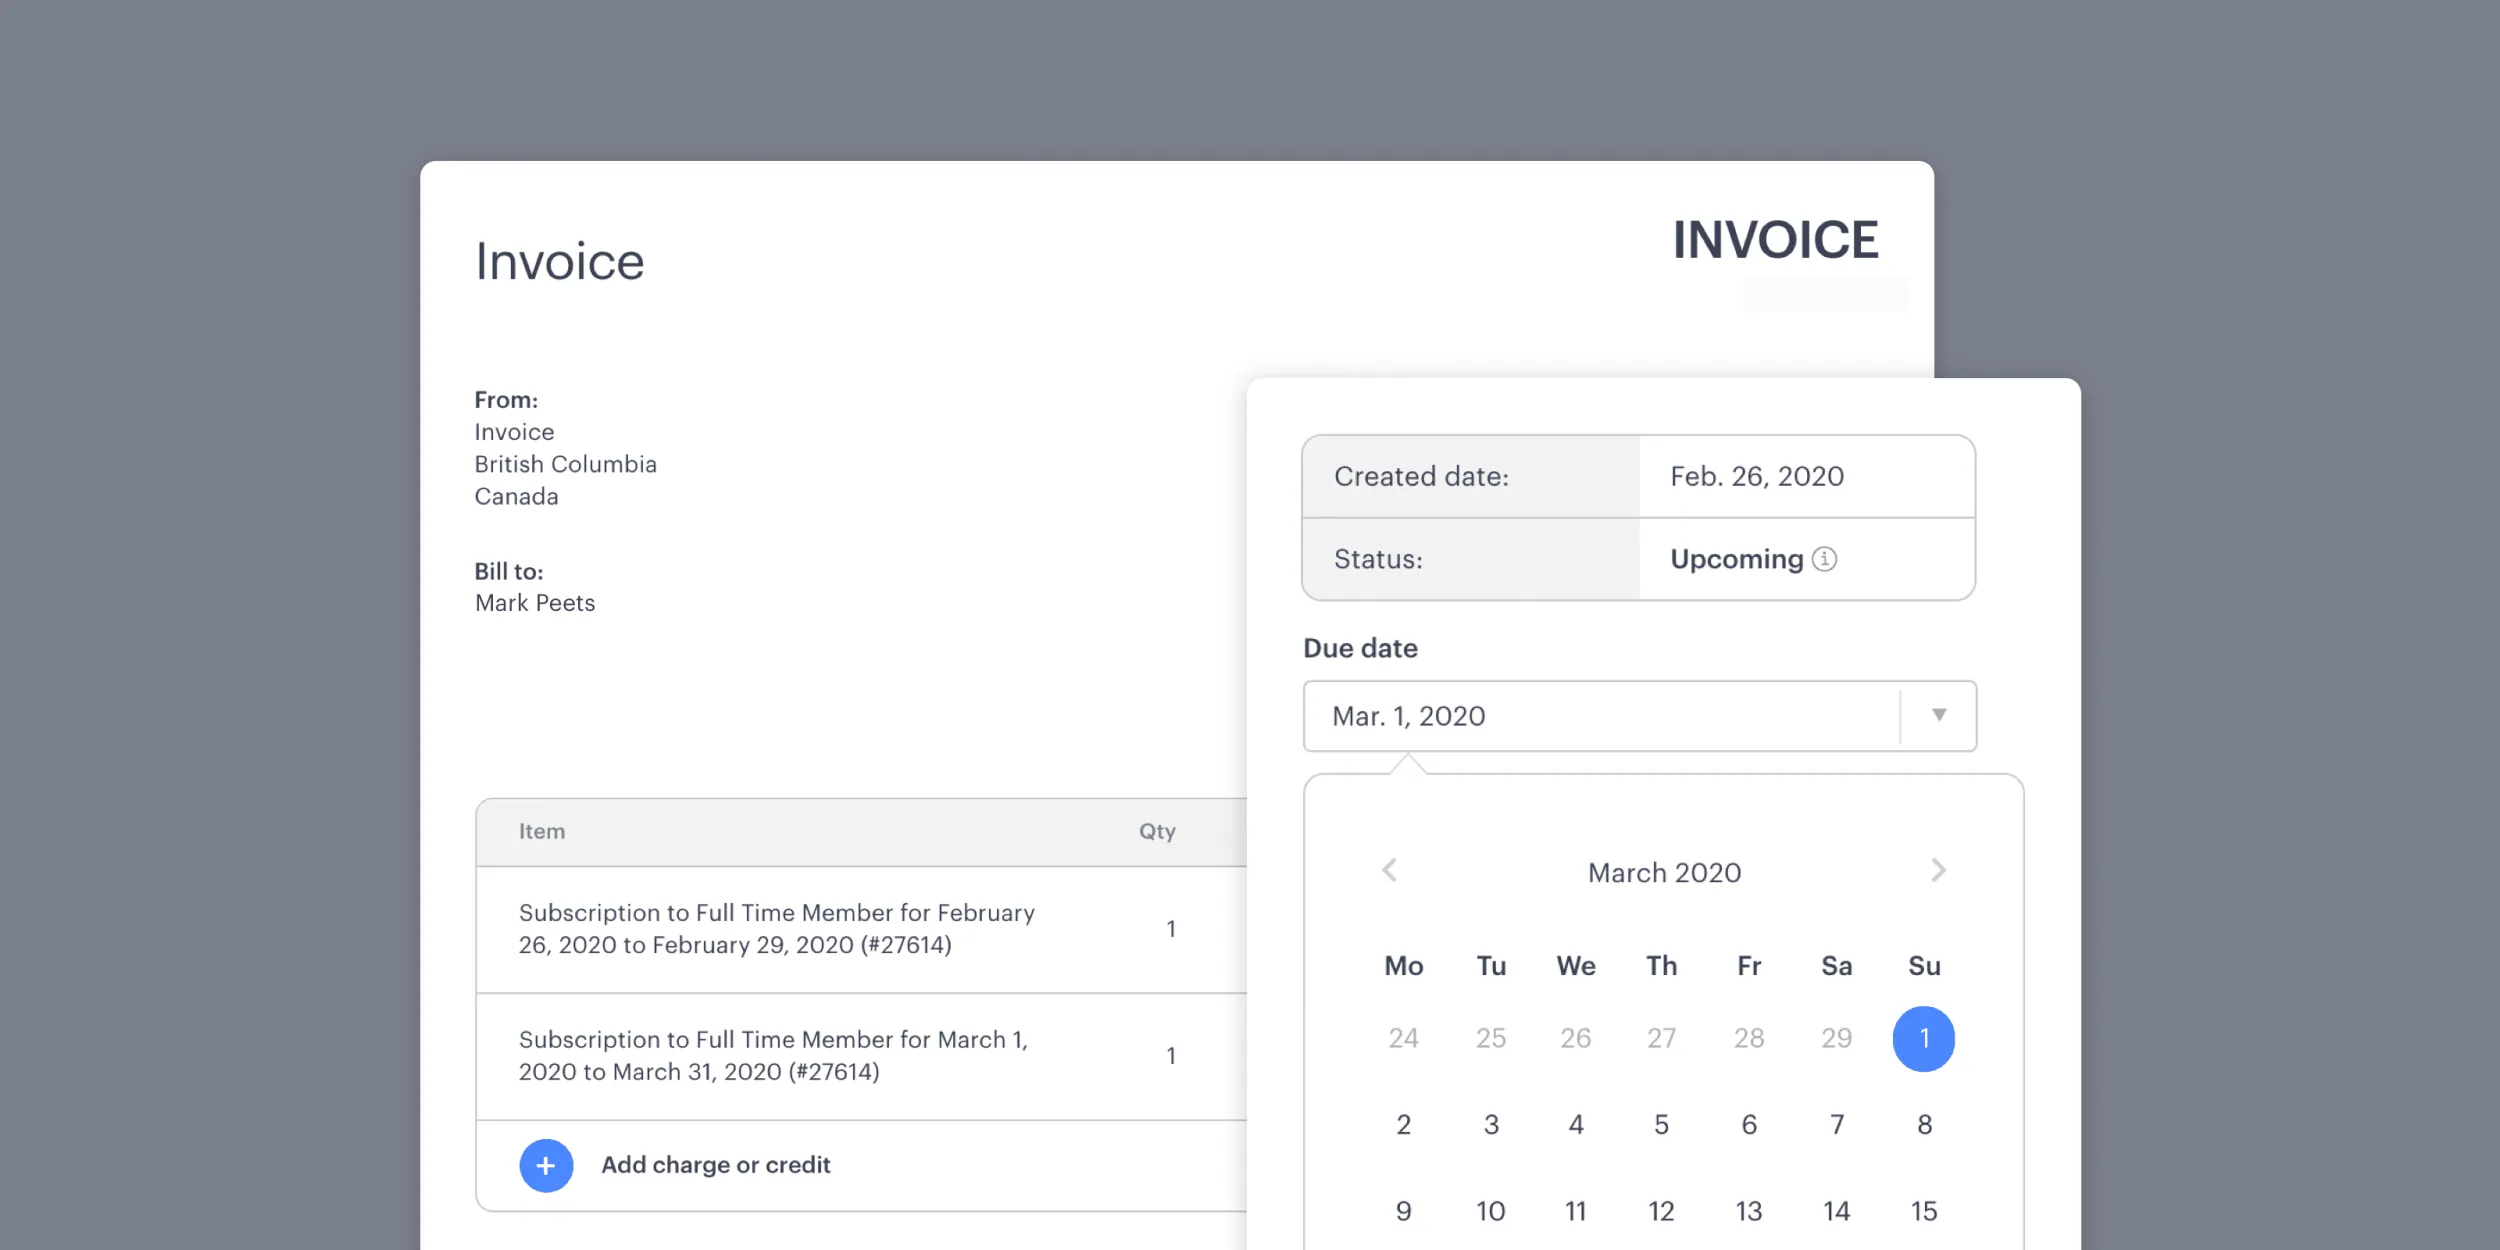 Managing invoices in Optix